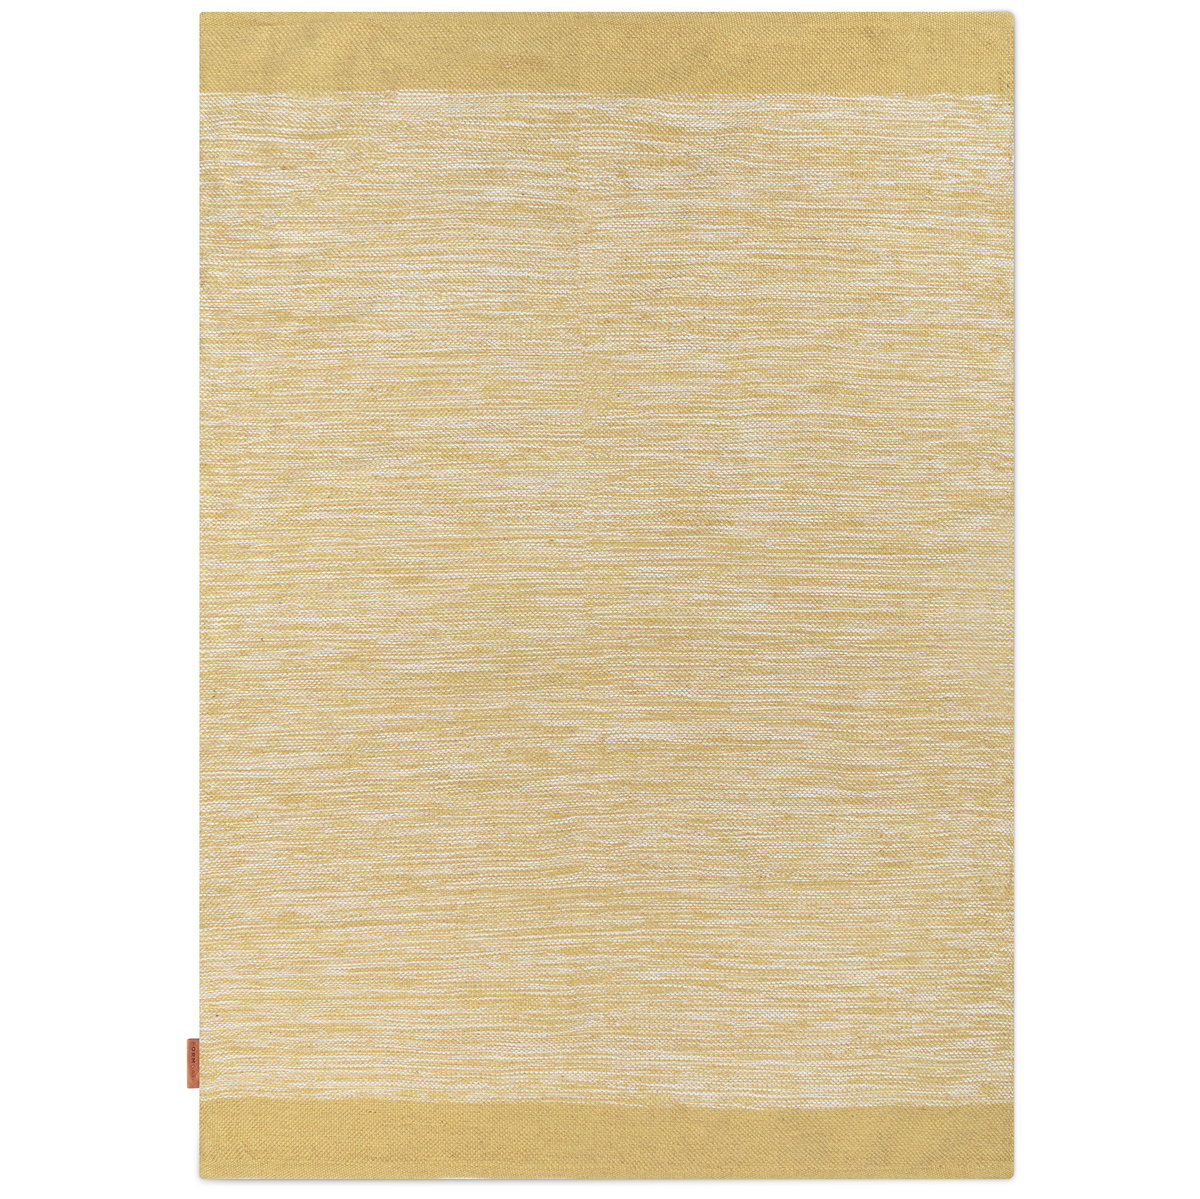 Formgatan Melange vloerkleed 170x230 cm Dusty yellow